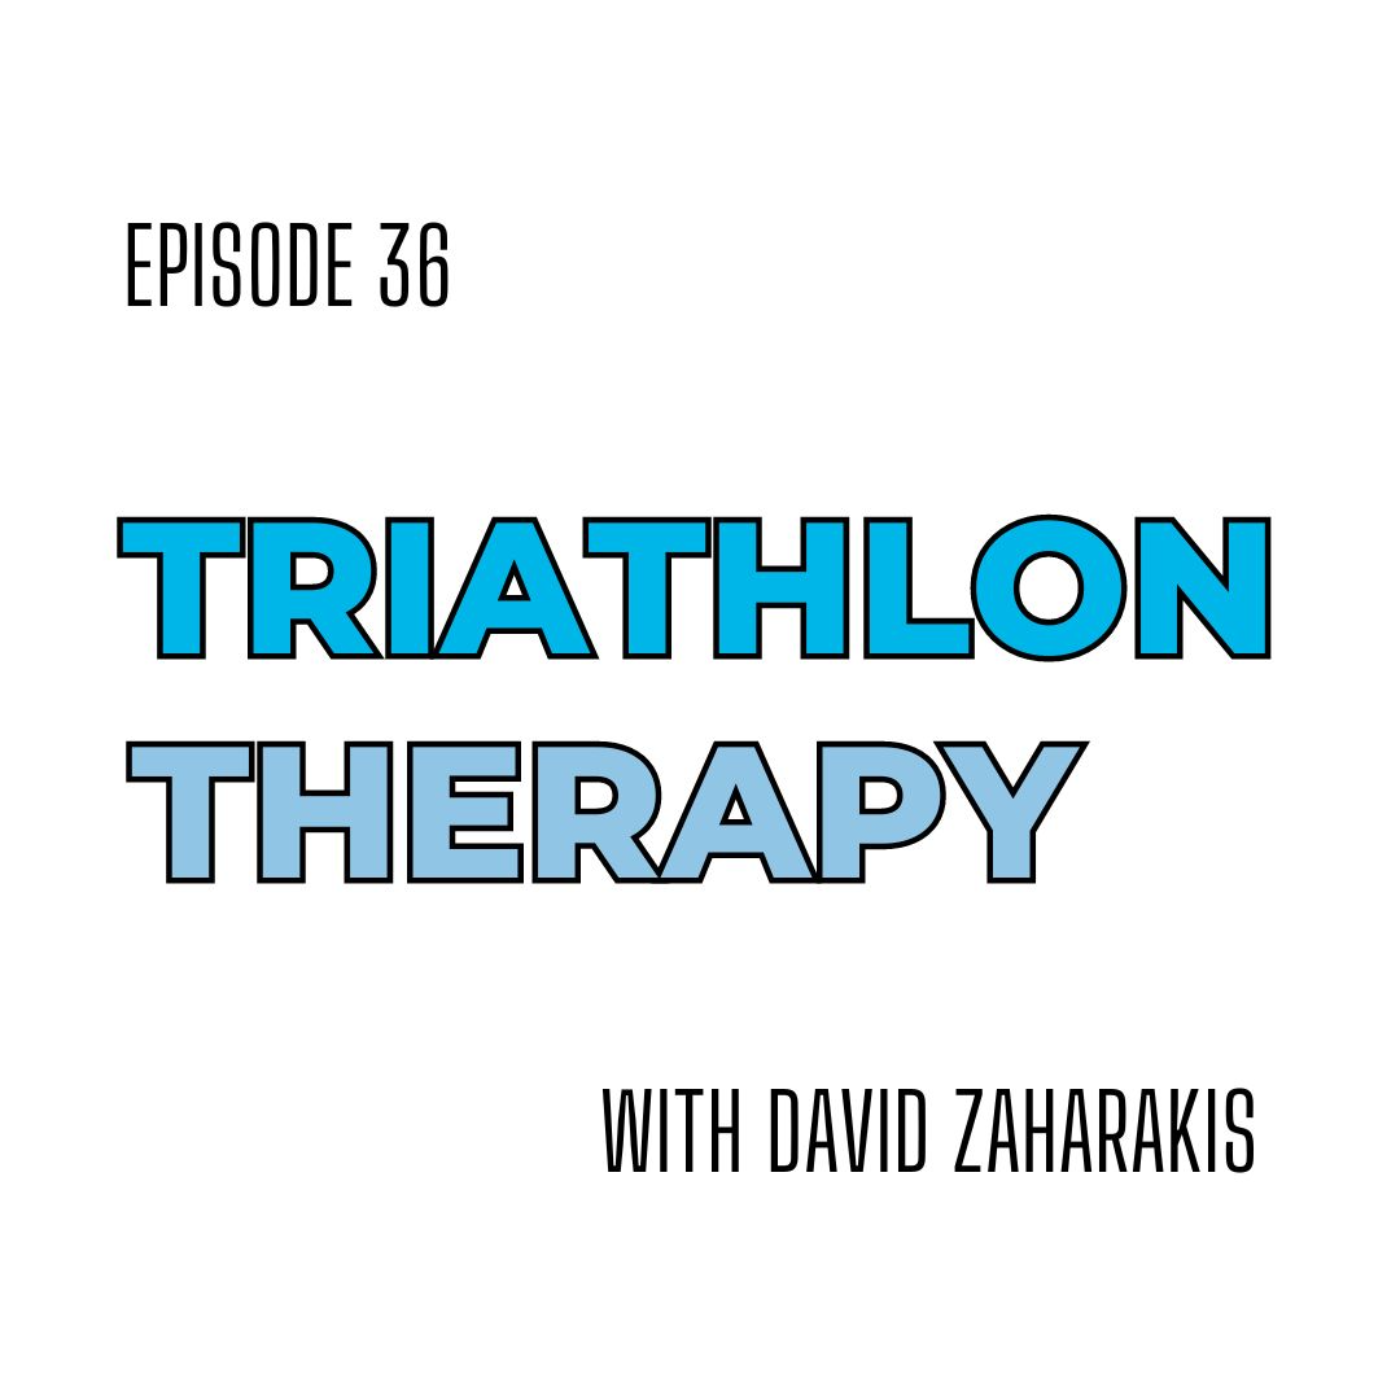 Football to Triathlon with David Zaharakis